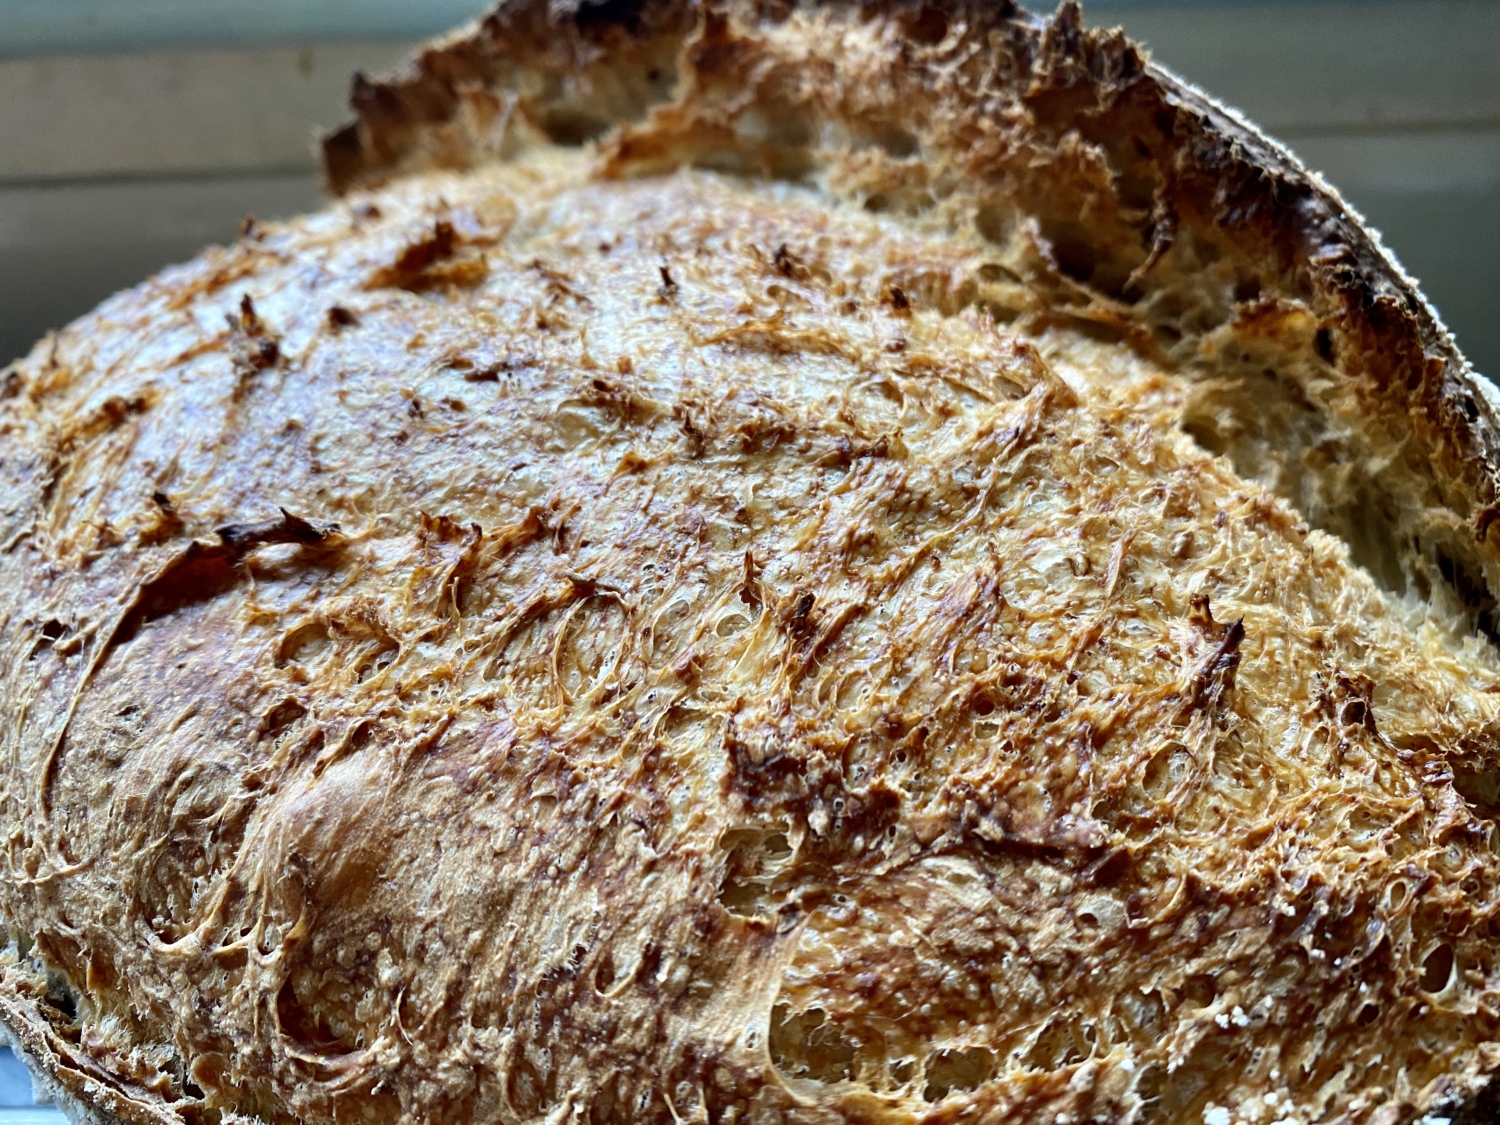 Country Farmhouse Bread Recipe - Sourdough Bread